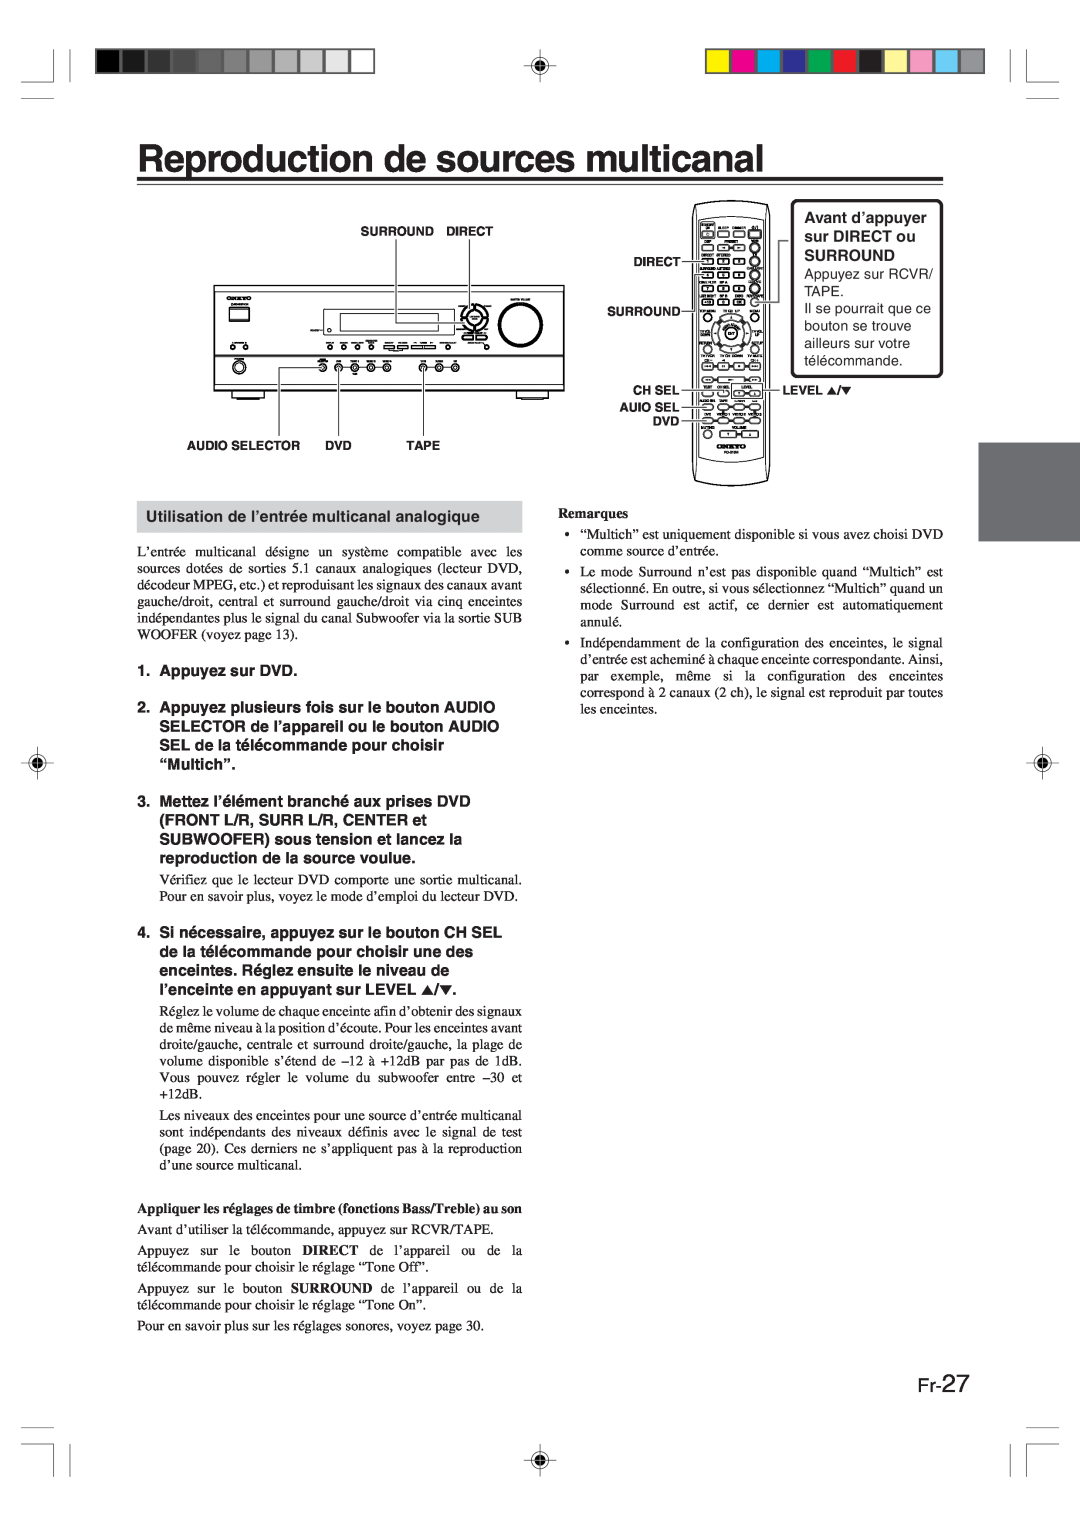 Onkyo HT-R420 manual Reproduction de sources multicanal, Fr-27, Avant d’appuyer, Remarques 